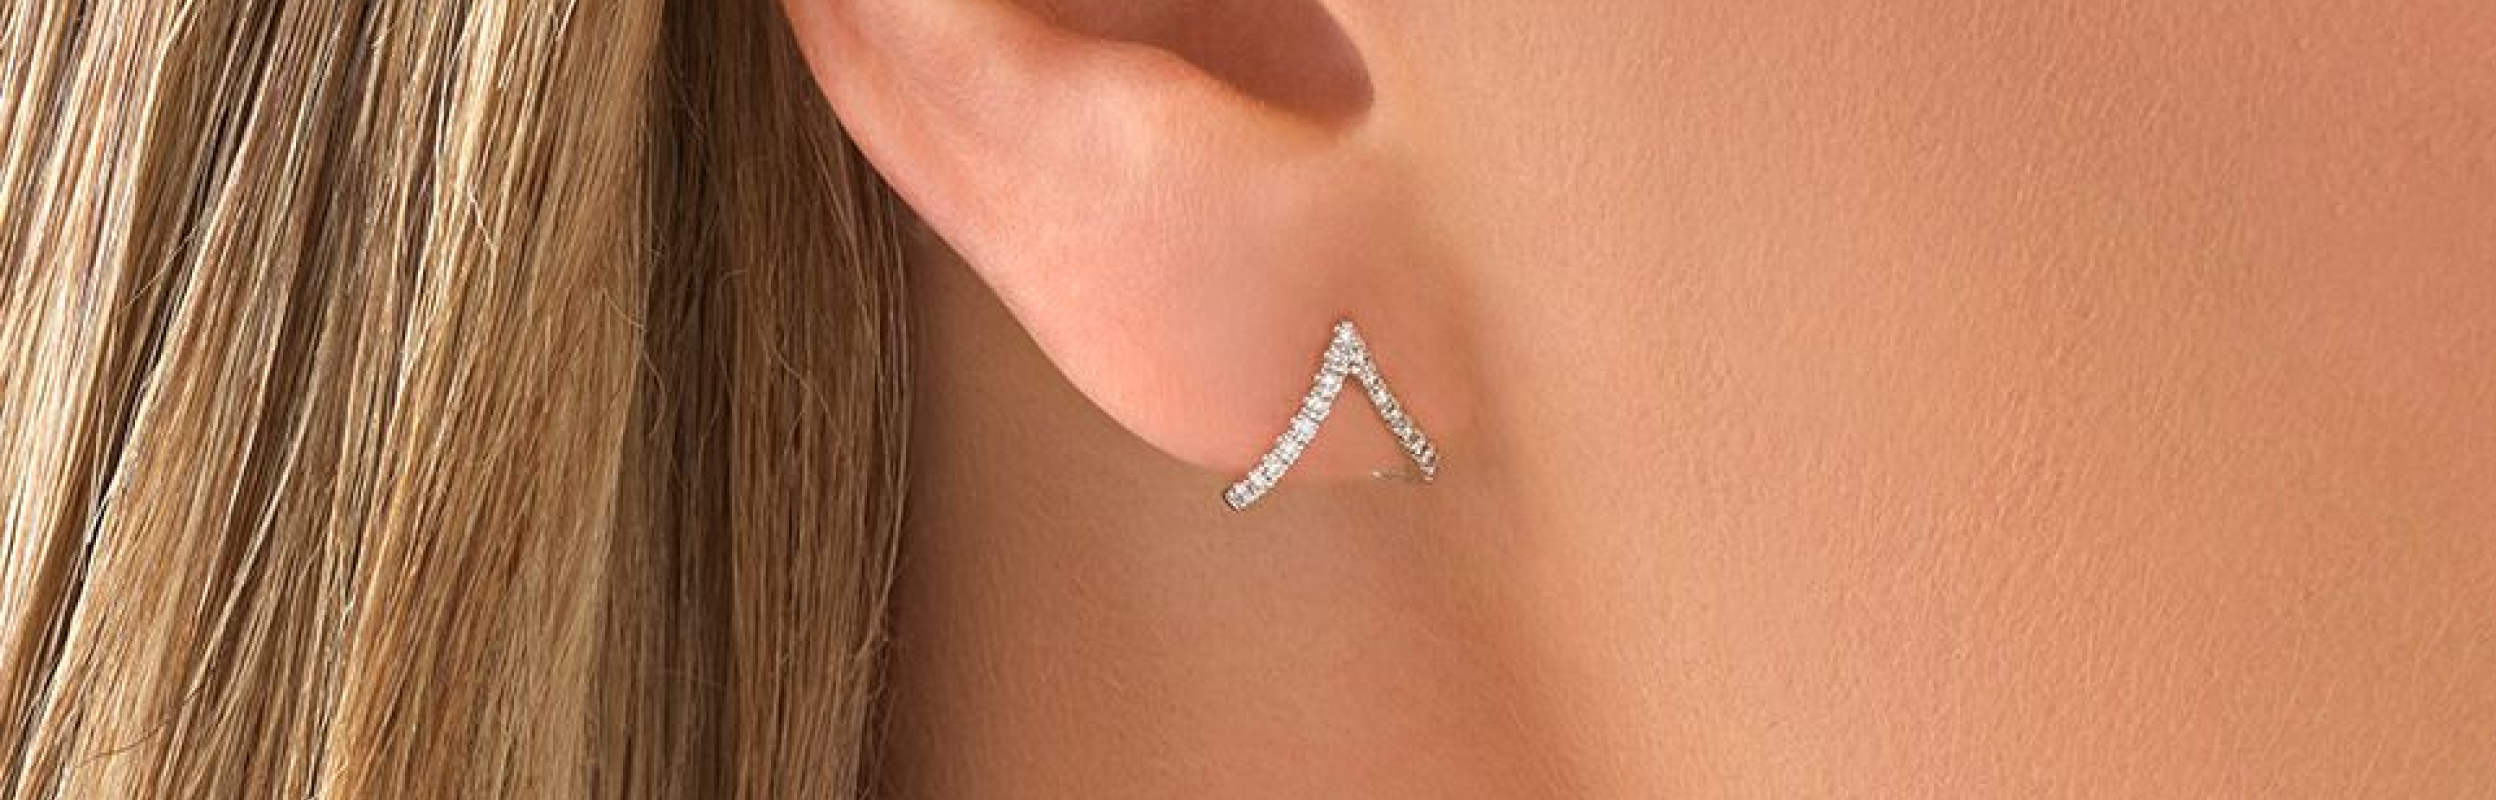 chevron sterling silver stud earring in ear